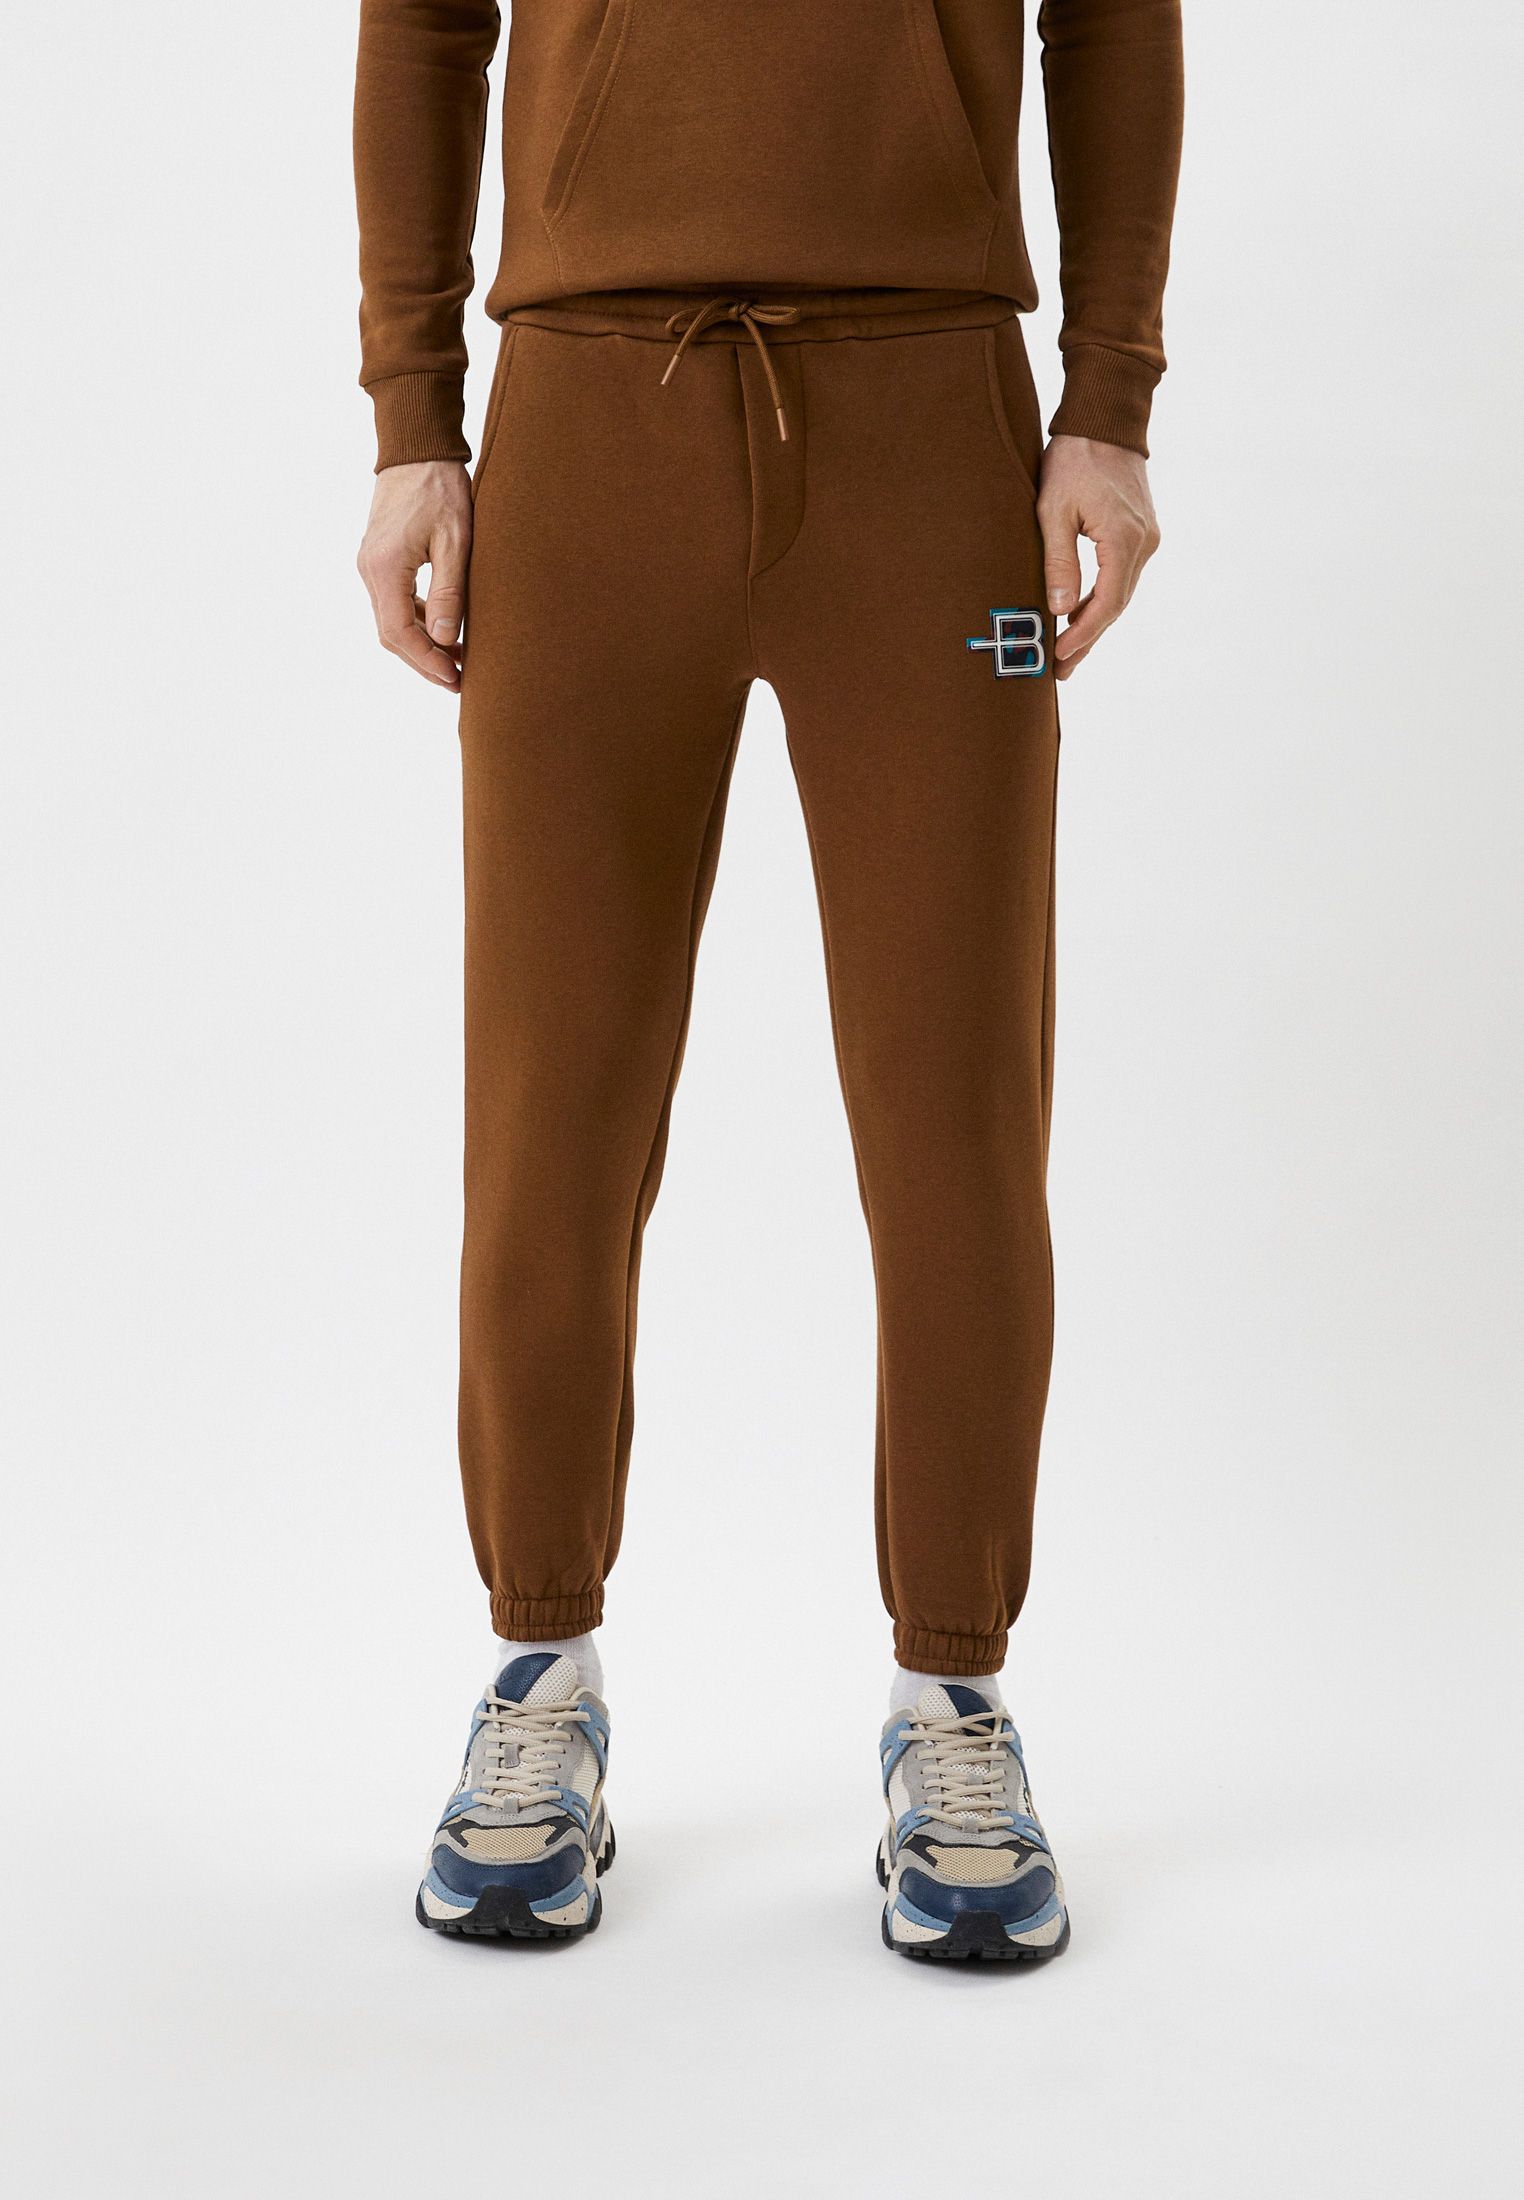 Мужские спортивные брюки Baldinini (Балдинини) BDO-M018: изображение 1